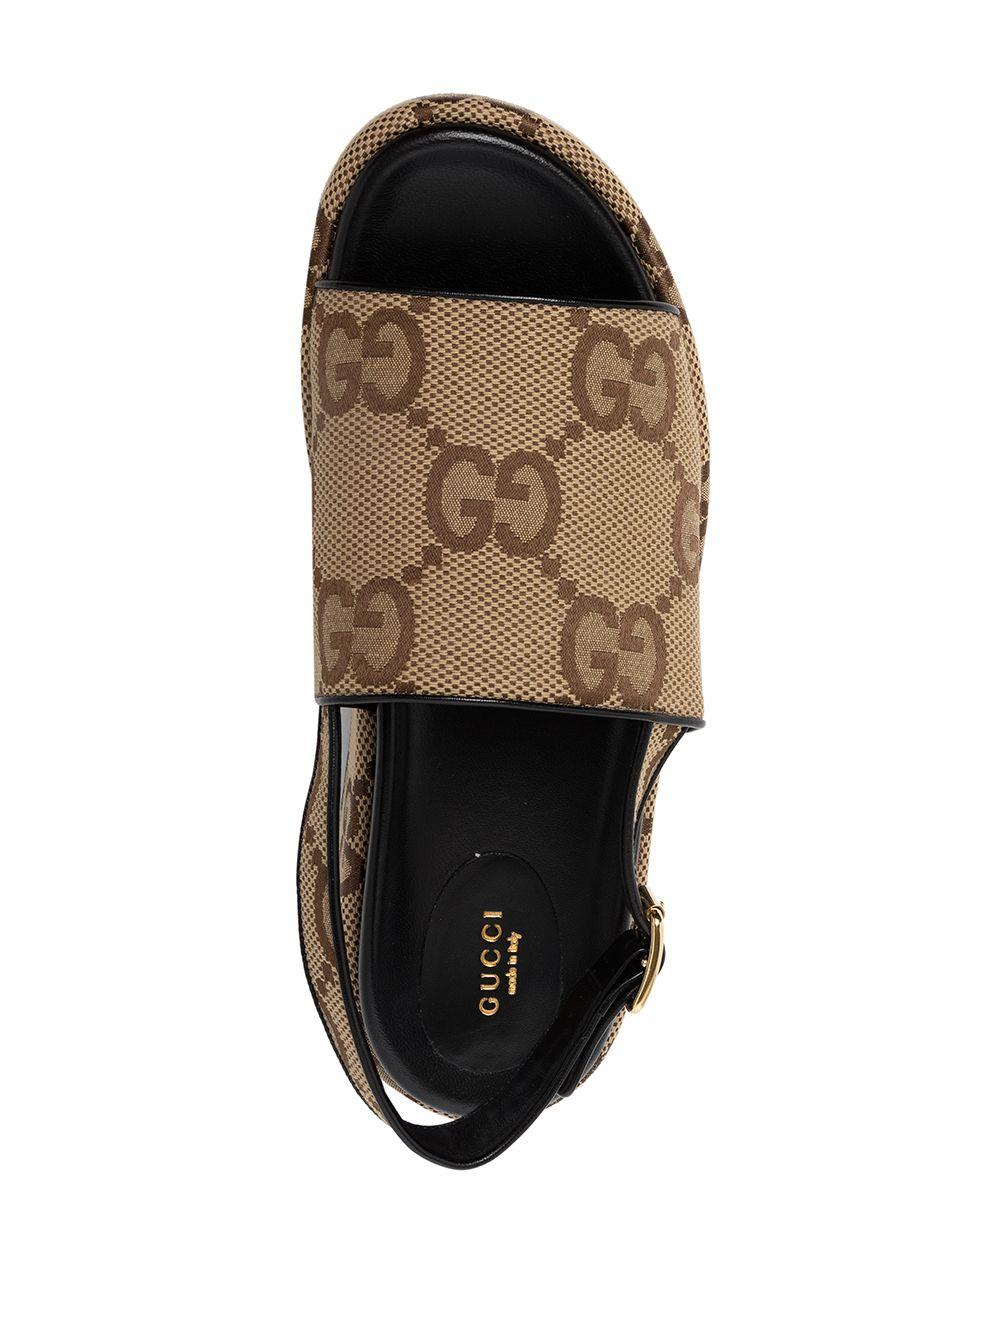 Gucci Cotton GG Supreme Platform Sandals in Brown | Lyst